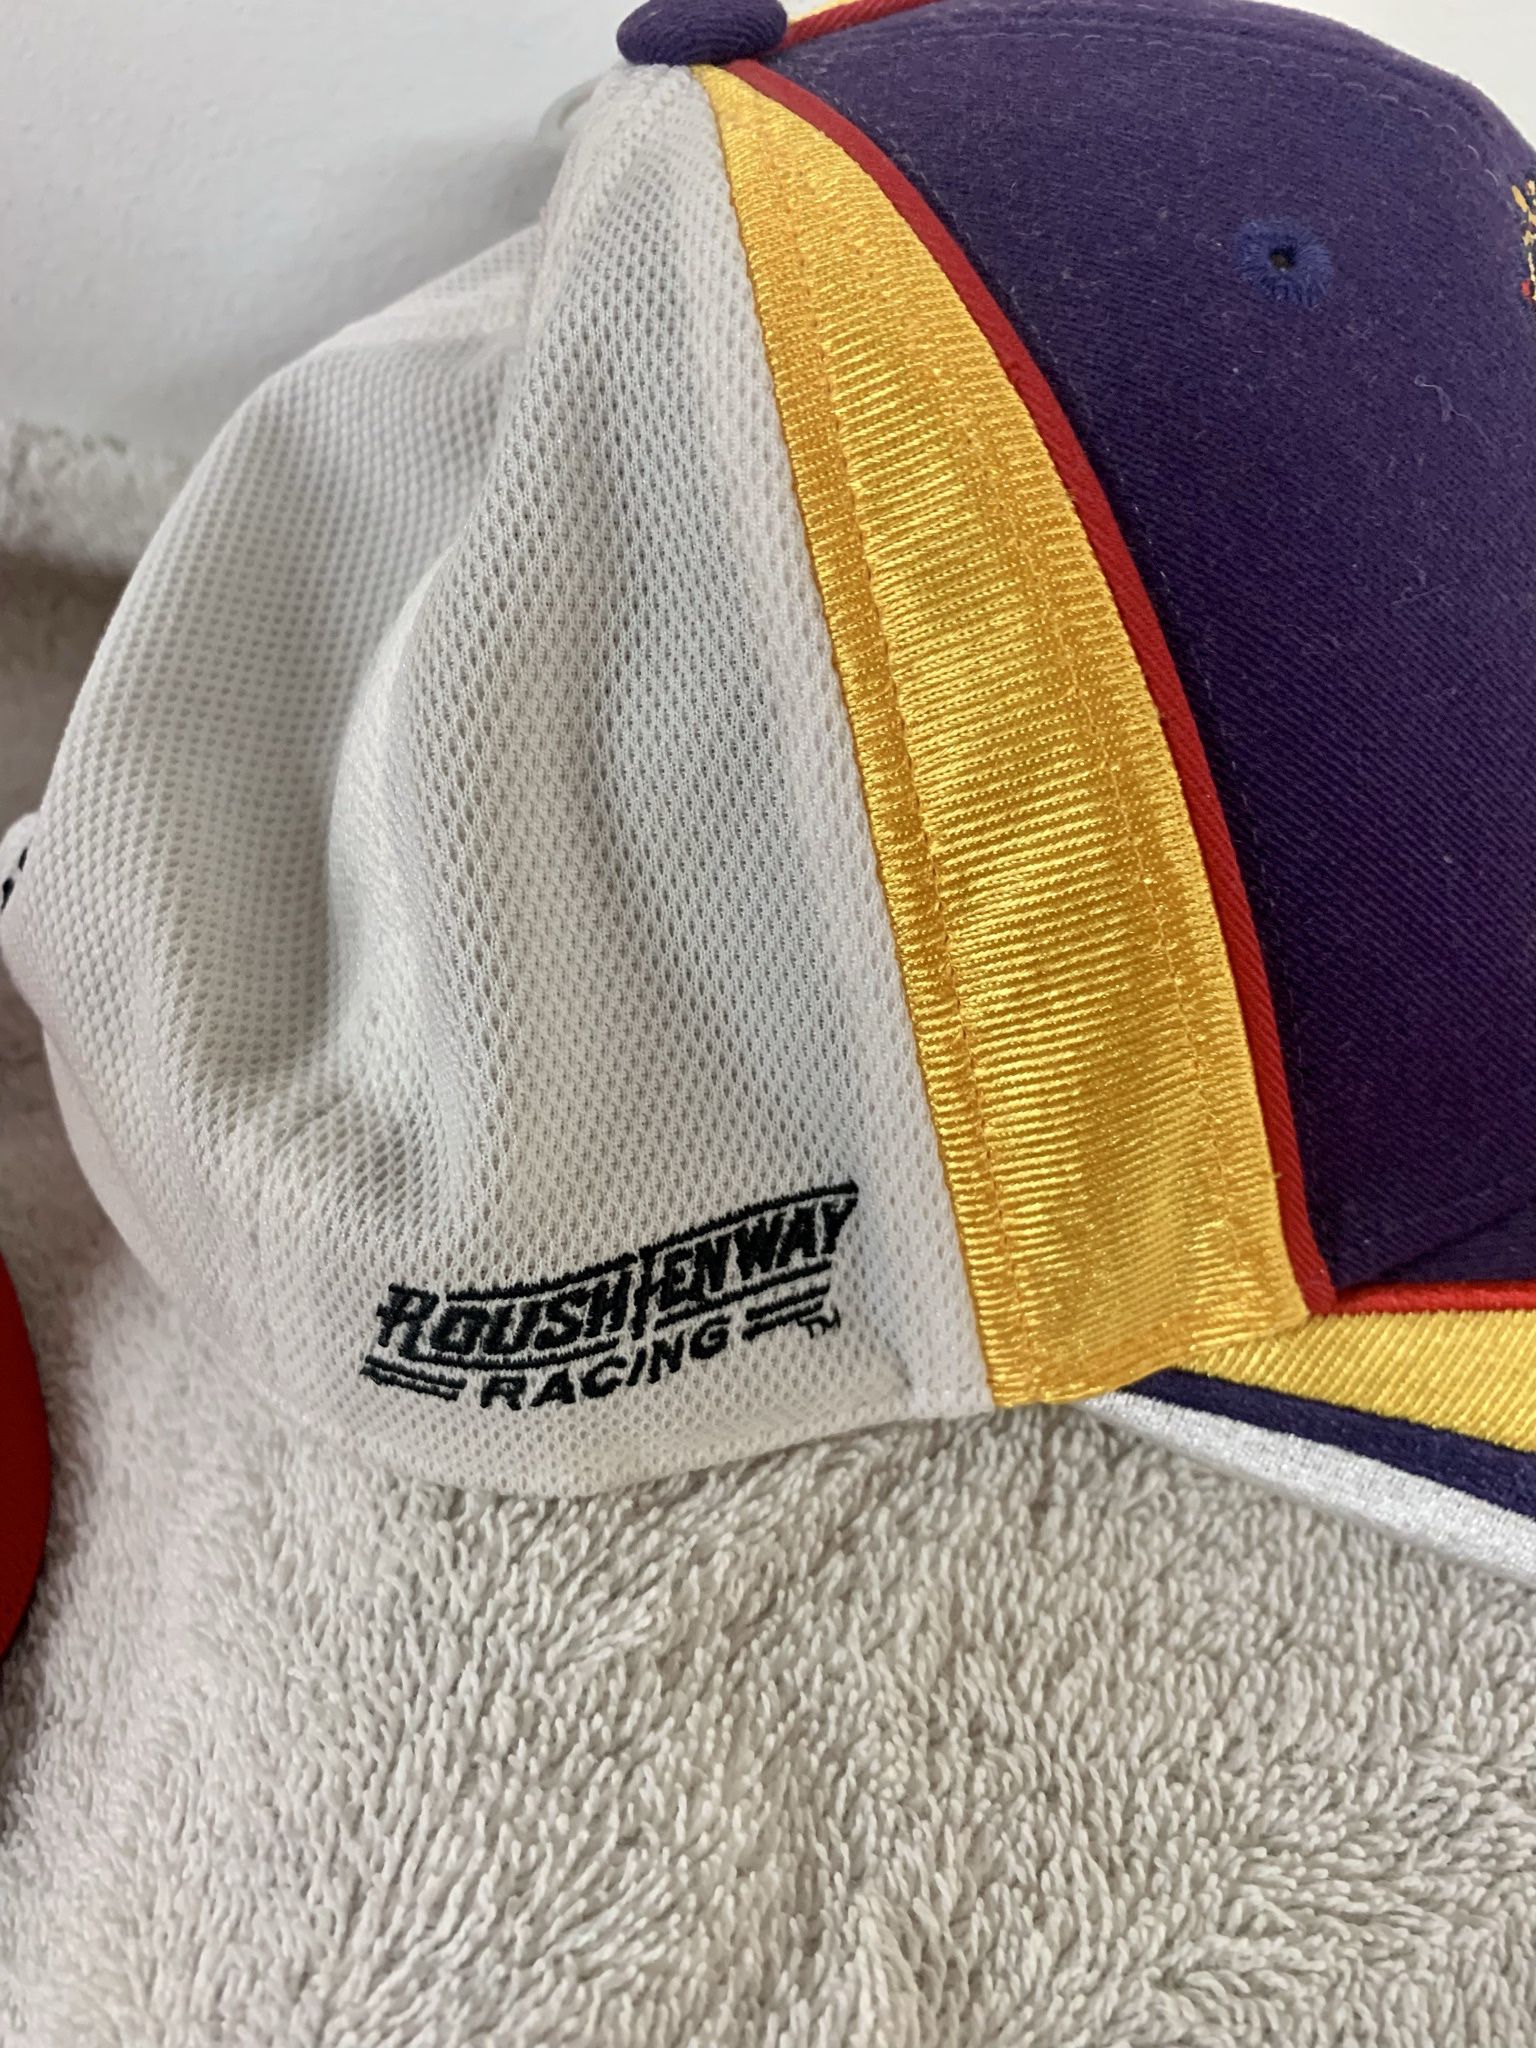 Crown Royal & Penske Racing Hats